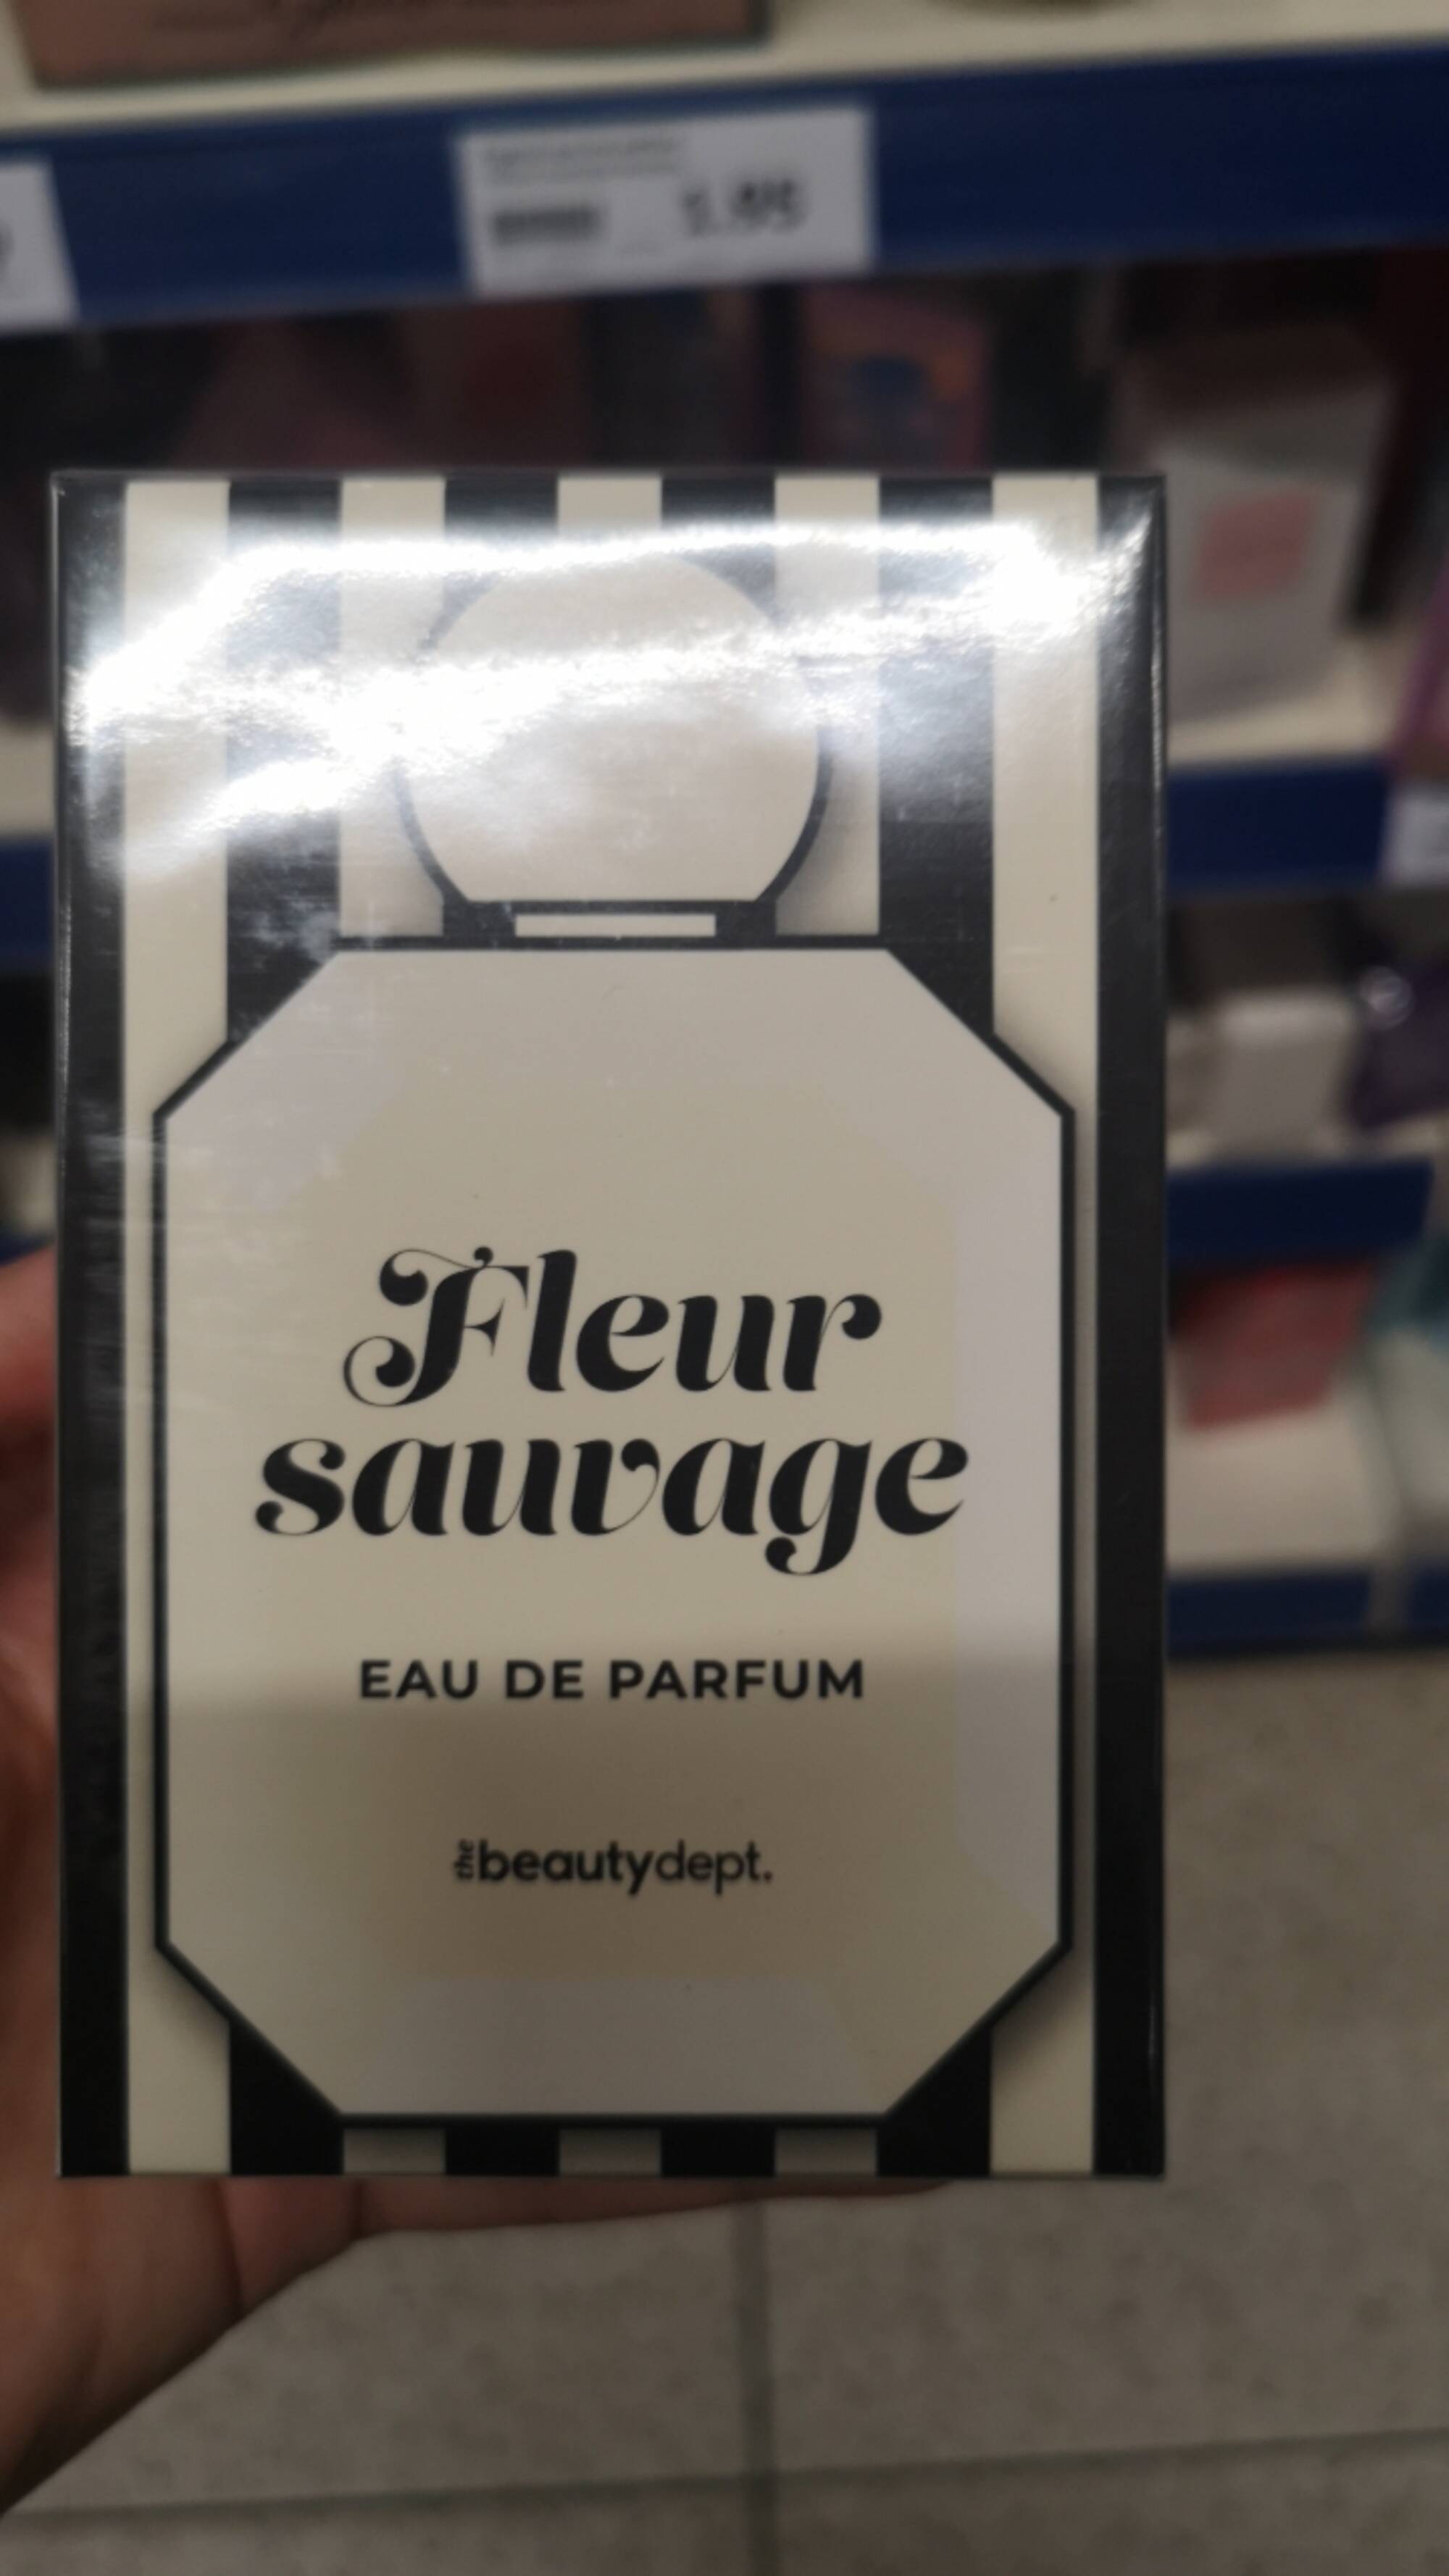 THE BEAUTY DEPT - Fleur sauvage - Eau de parfum